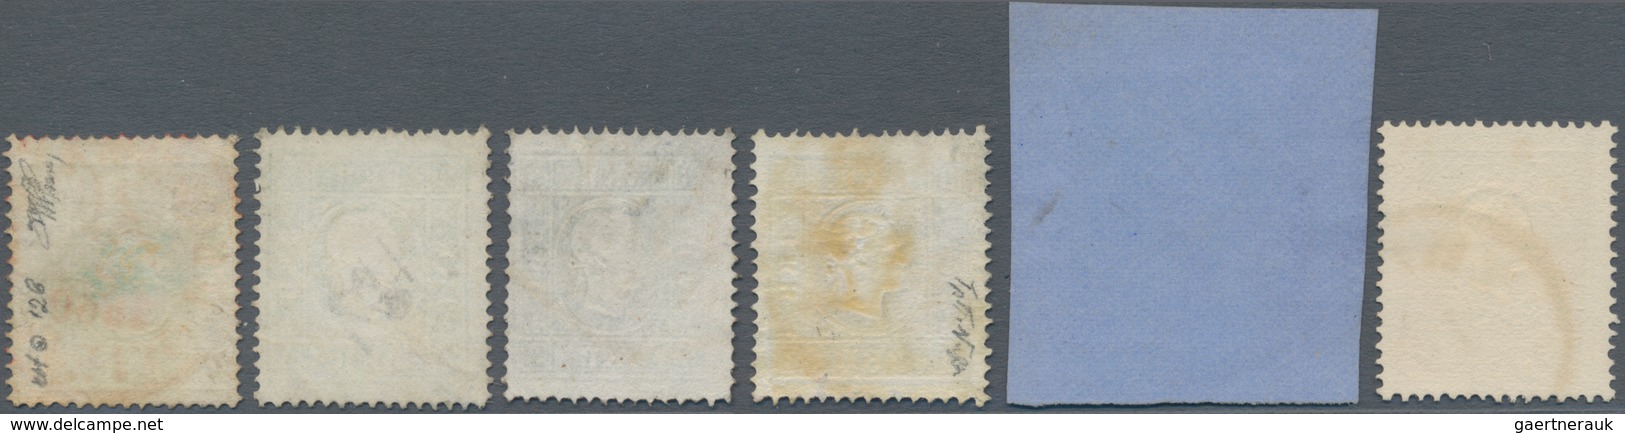 Österreich: 1858/1859, Sechs Werte In Type II Dabei 2 Kr. Gelb (Bfstk. Mit Rotstpl.) Und Orange Sowi - Used Stamps